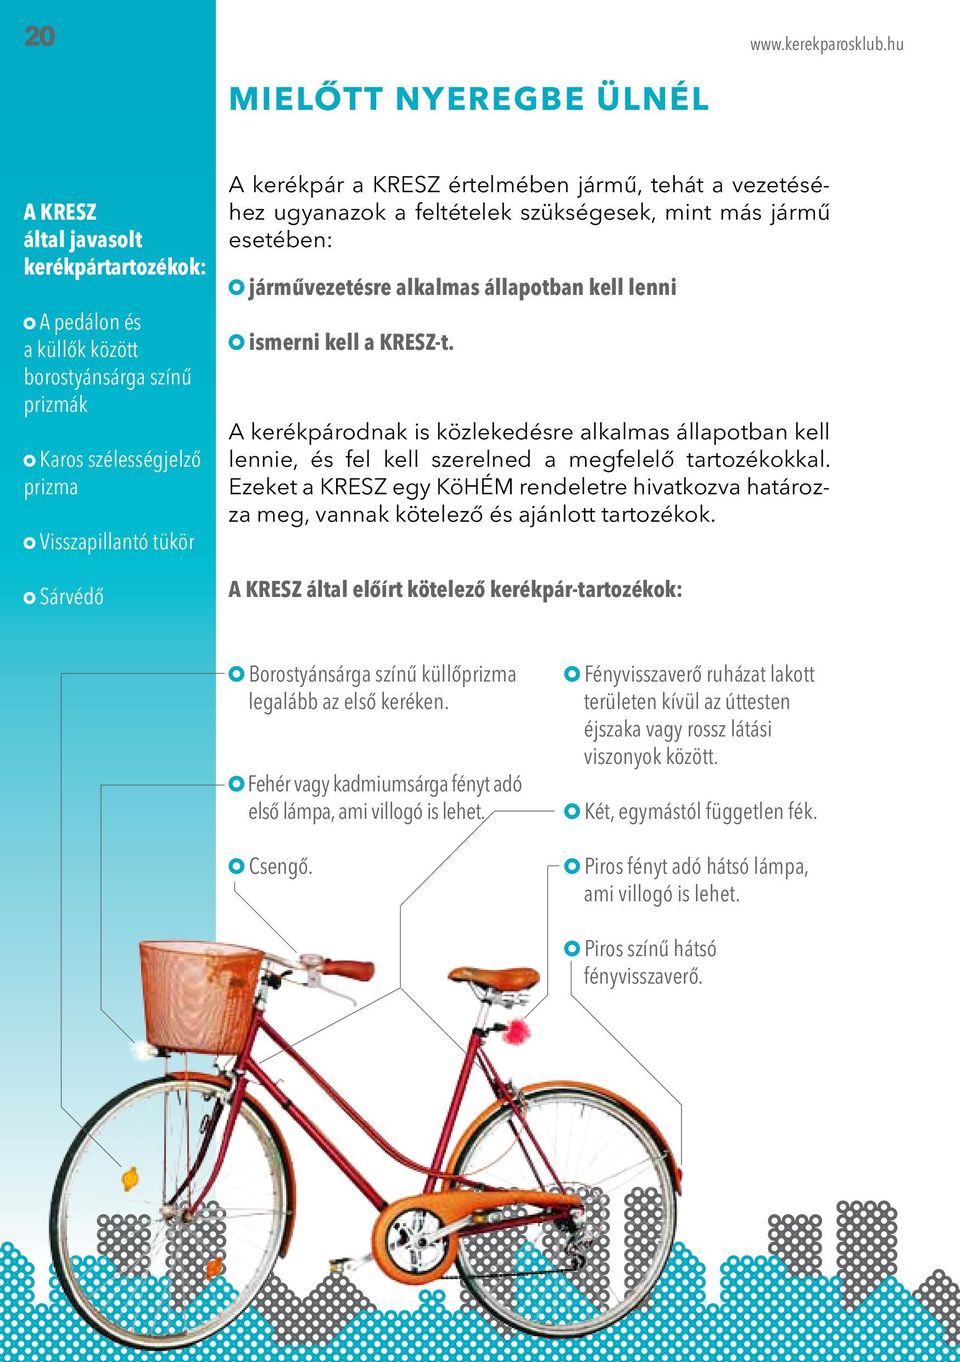 A kerékpárodnak is közlekedésre alkalmas állapotban kell lennie, és fel kell szerelned a megfelelő tartozékokkal.